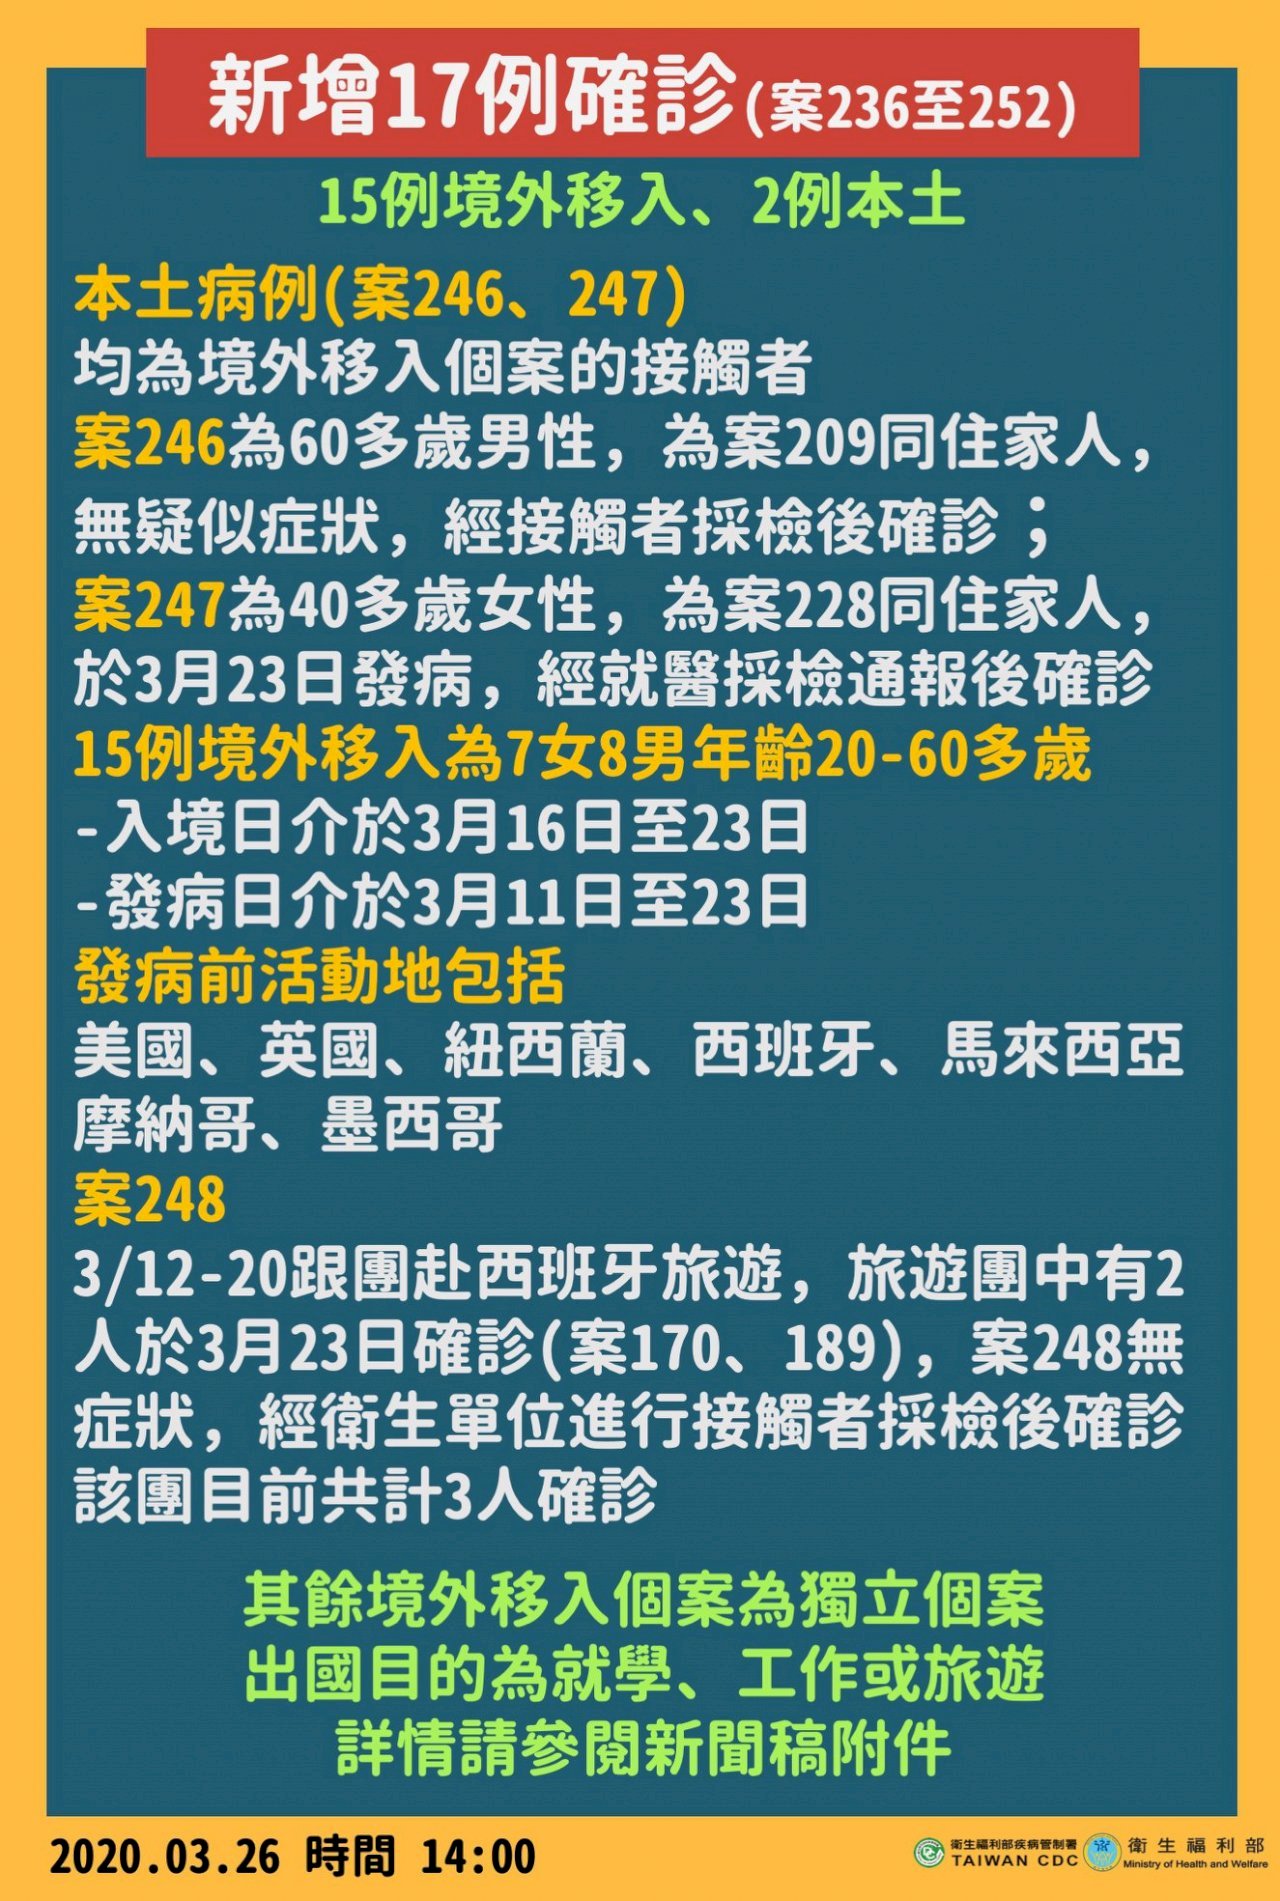 26/3, Đài Loan thêm 17 ca nhiễm Covid 19, toàn Đài Loan có tổng cộng 252 trường hợp xác nhận nhiễm bệnh